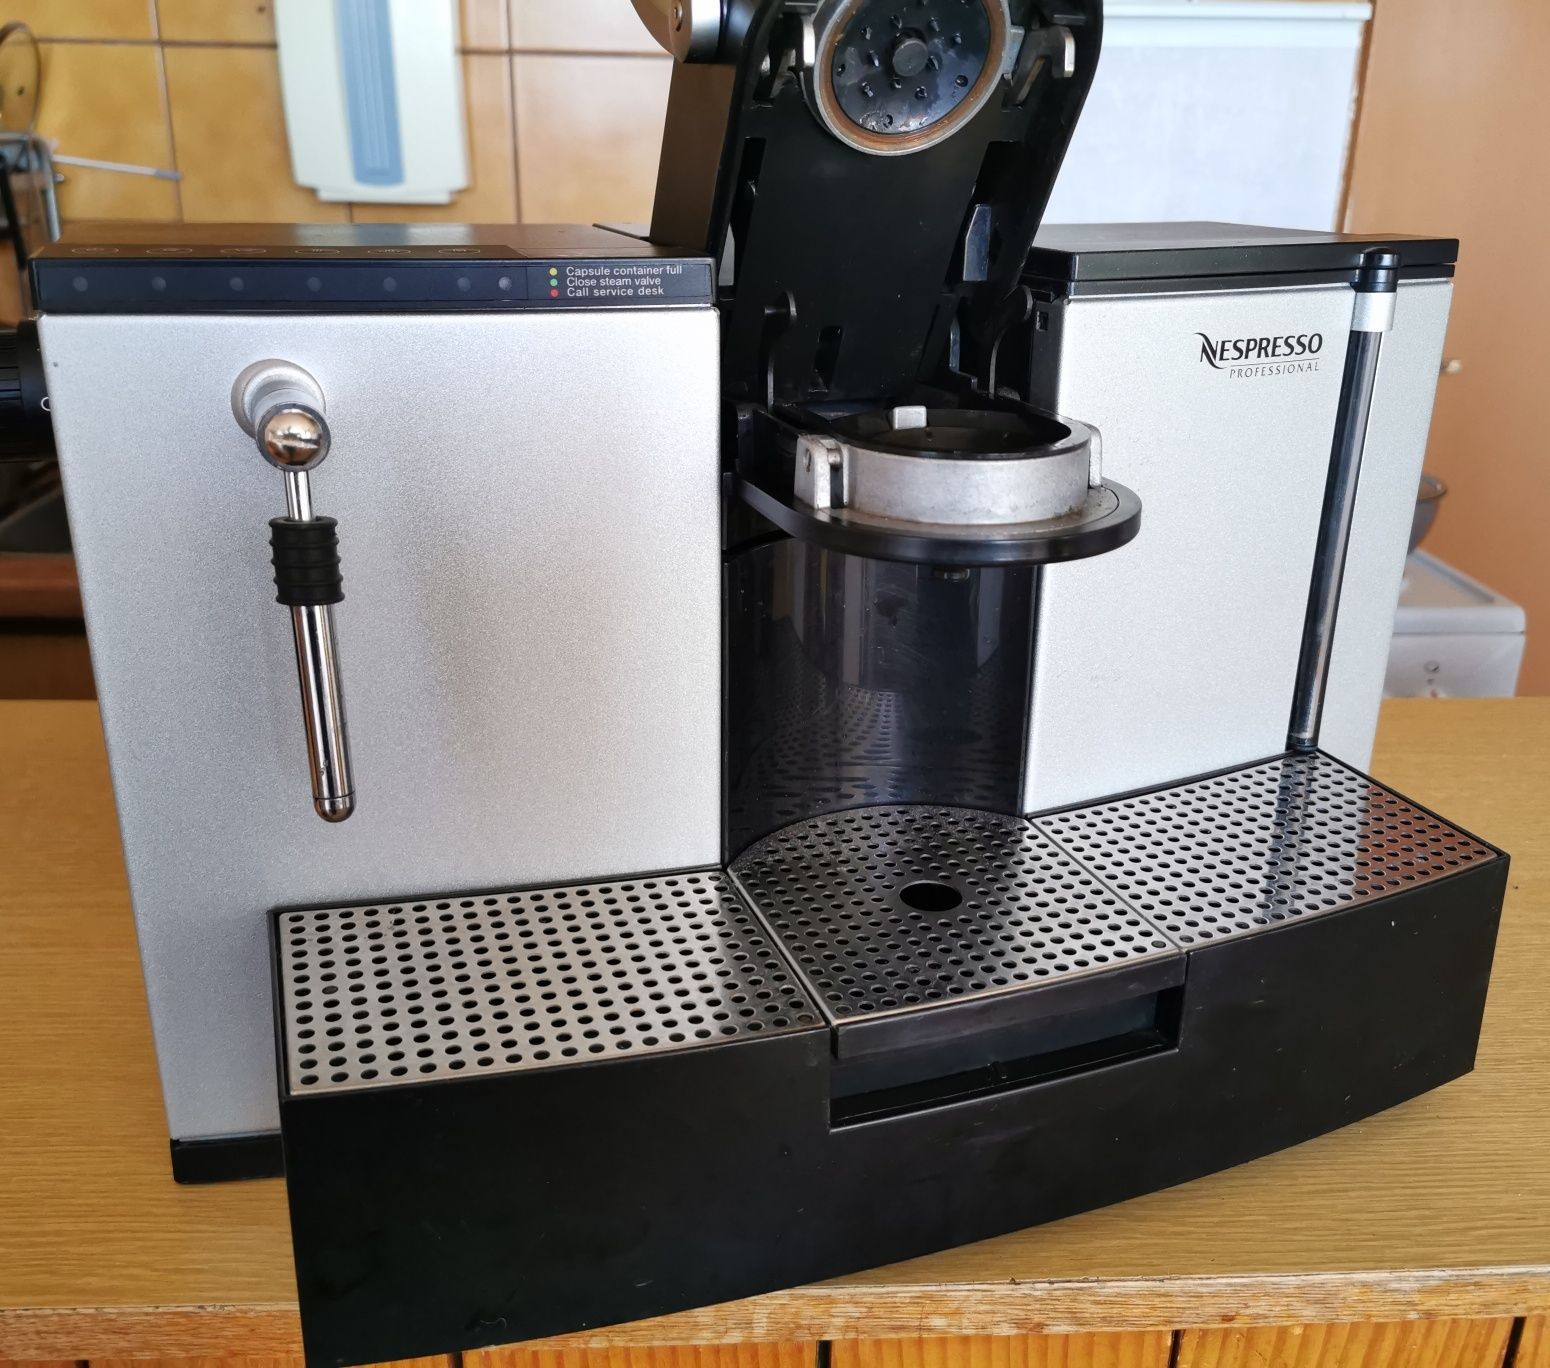 Nespresso Profesional ES100 Pro Type 758